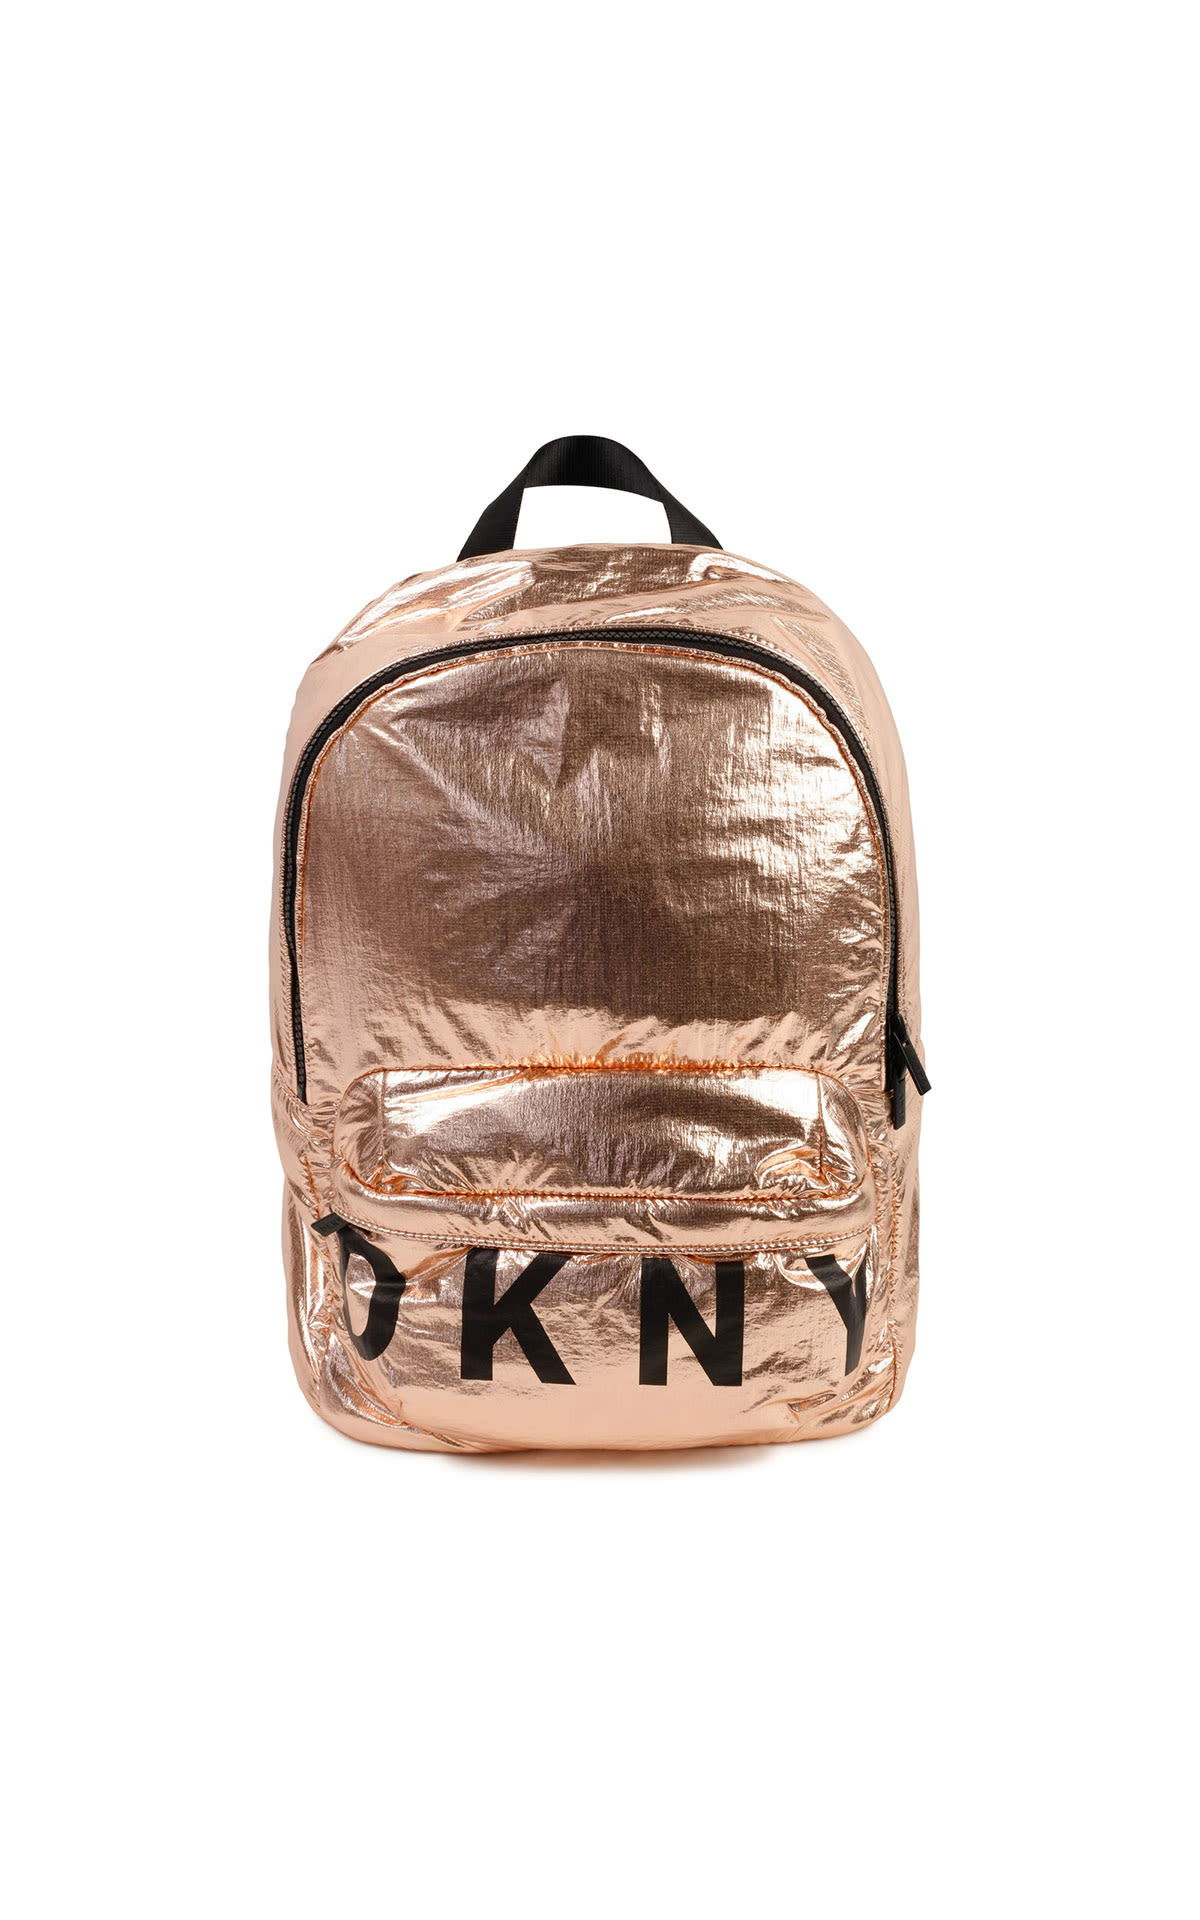 DKNY girl backpack